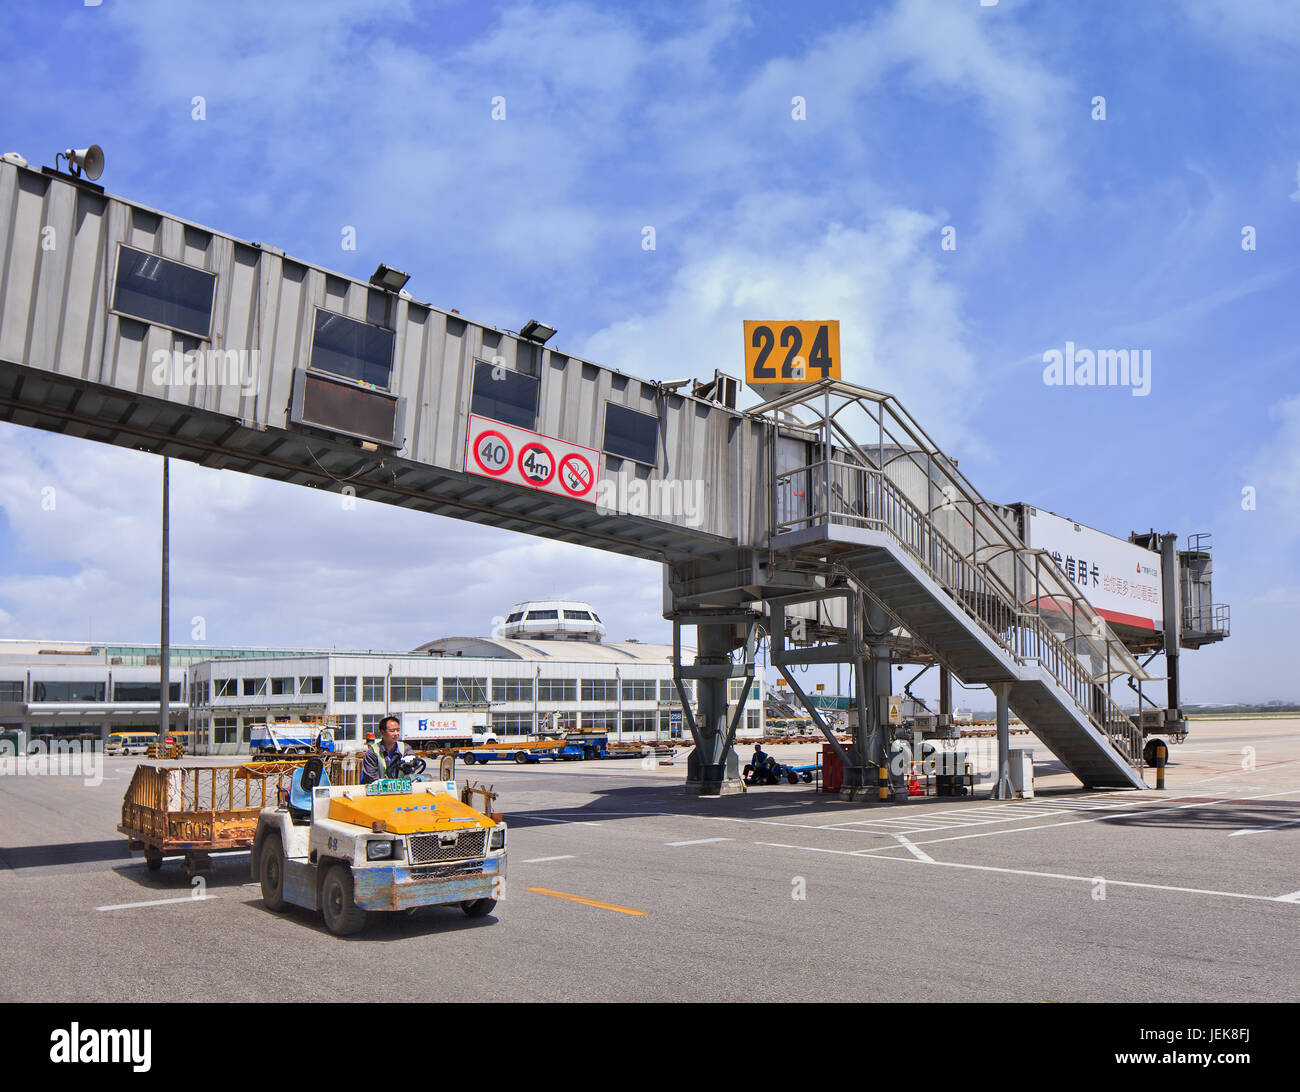 PEKING-MAI 27. 2014. Bordbrücke mit Schlepper auf dem Flughafen Peking. Geschwindigkeit, Effizienz und Genauigkeit sind bei Bodenabfertigungsdiensten von entscheidender Bedeutung. Stockfoto